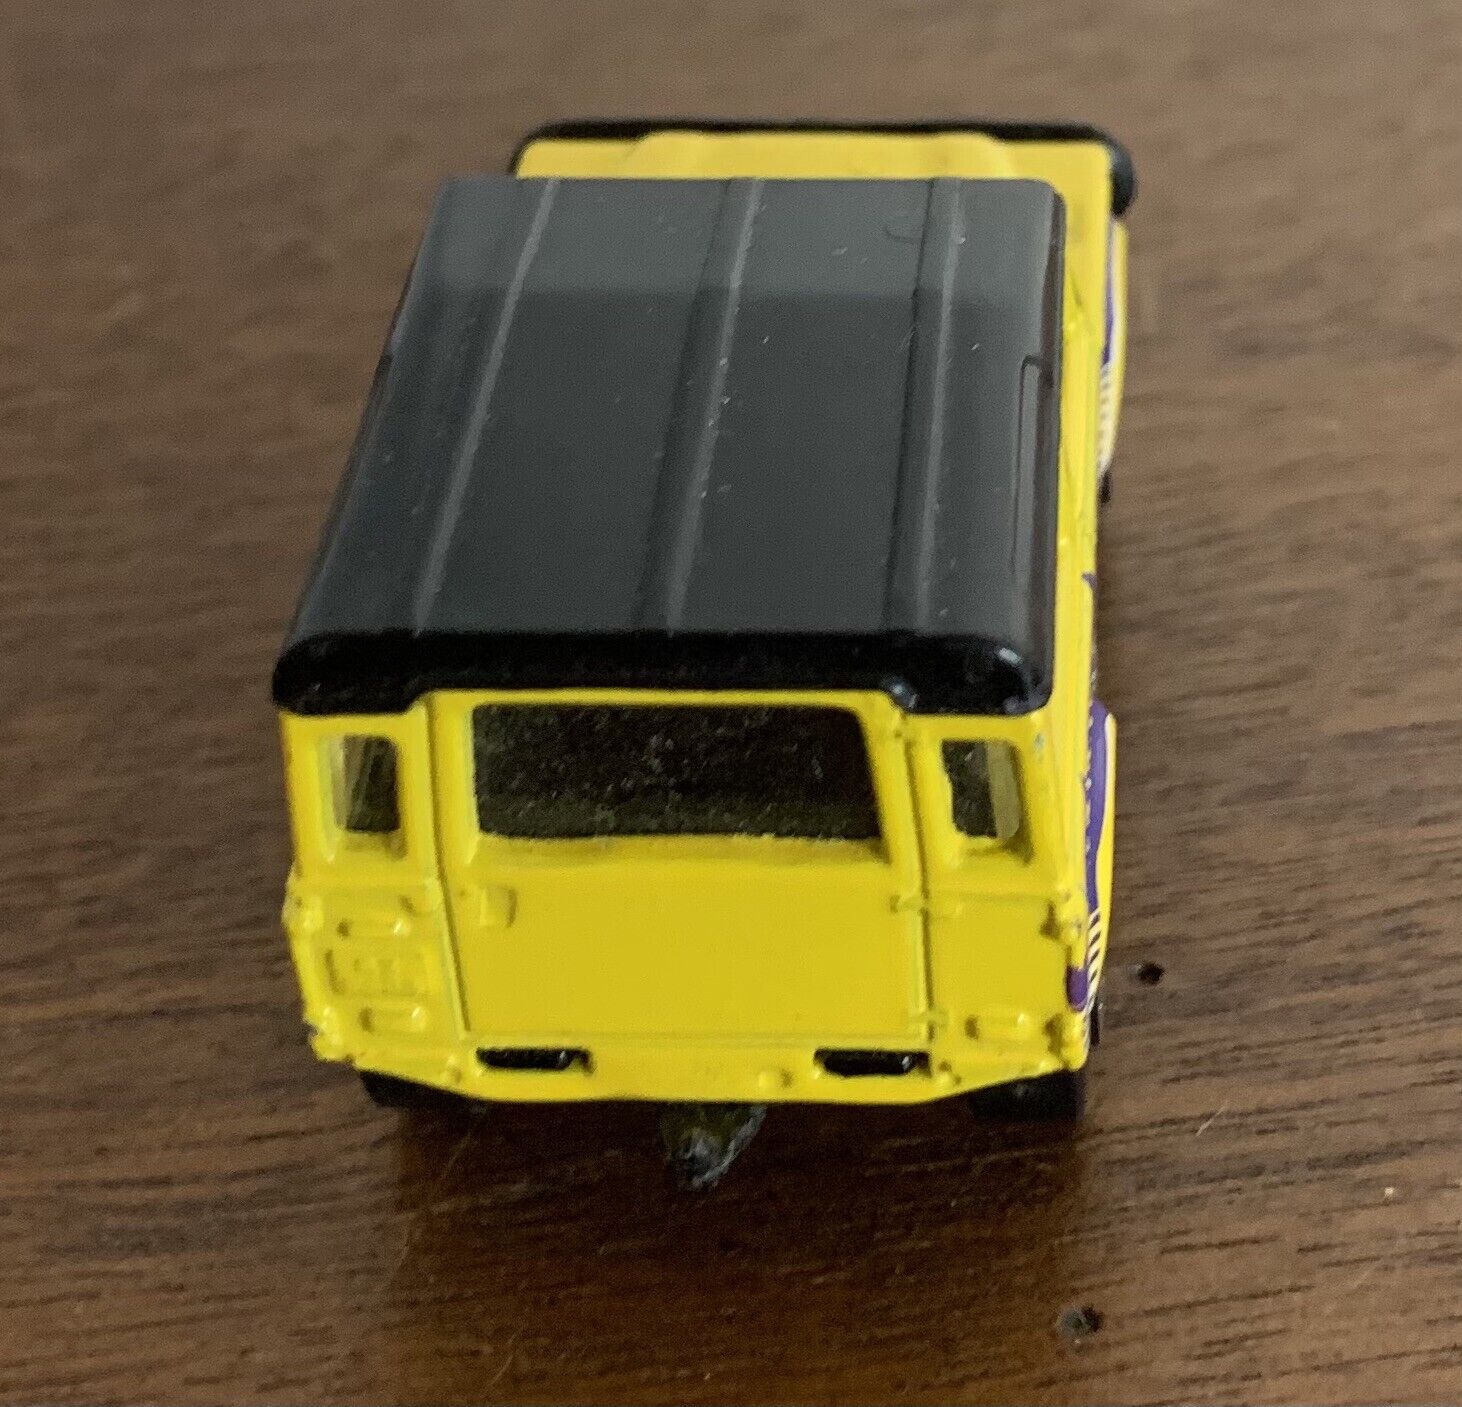 15815円 注文後の変更キャンセル返品 Mattel Matchbox 2006 MBX Metal 1:64 Scale Die Cast Car # 63 - Camo Green 4X4 SUV Land Rover SVX By 並行輸入品